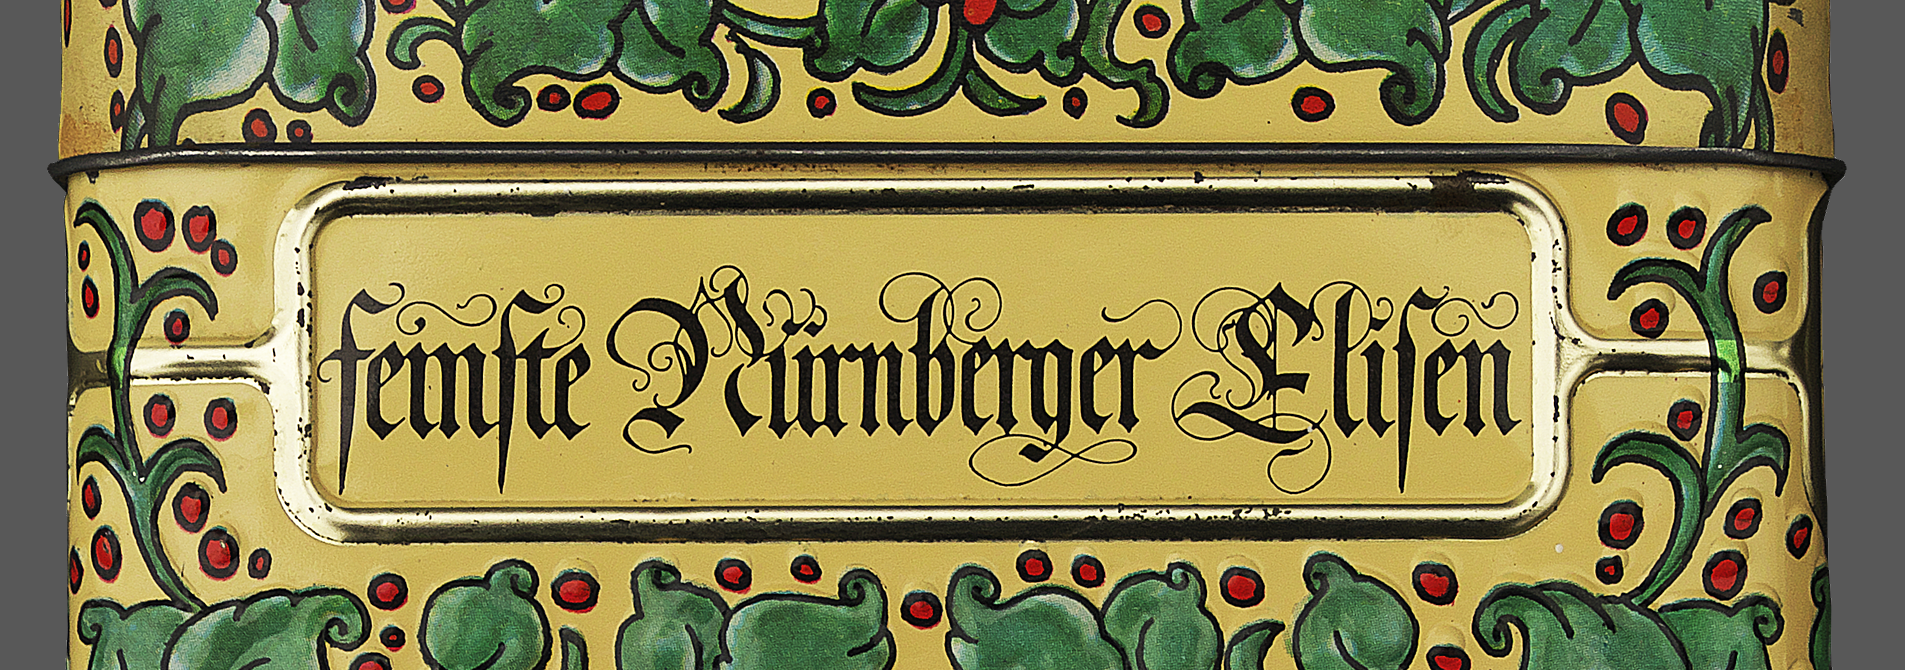 Nuernberger-Lebkuchen